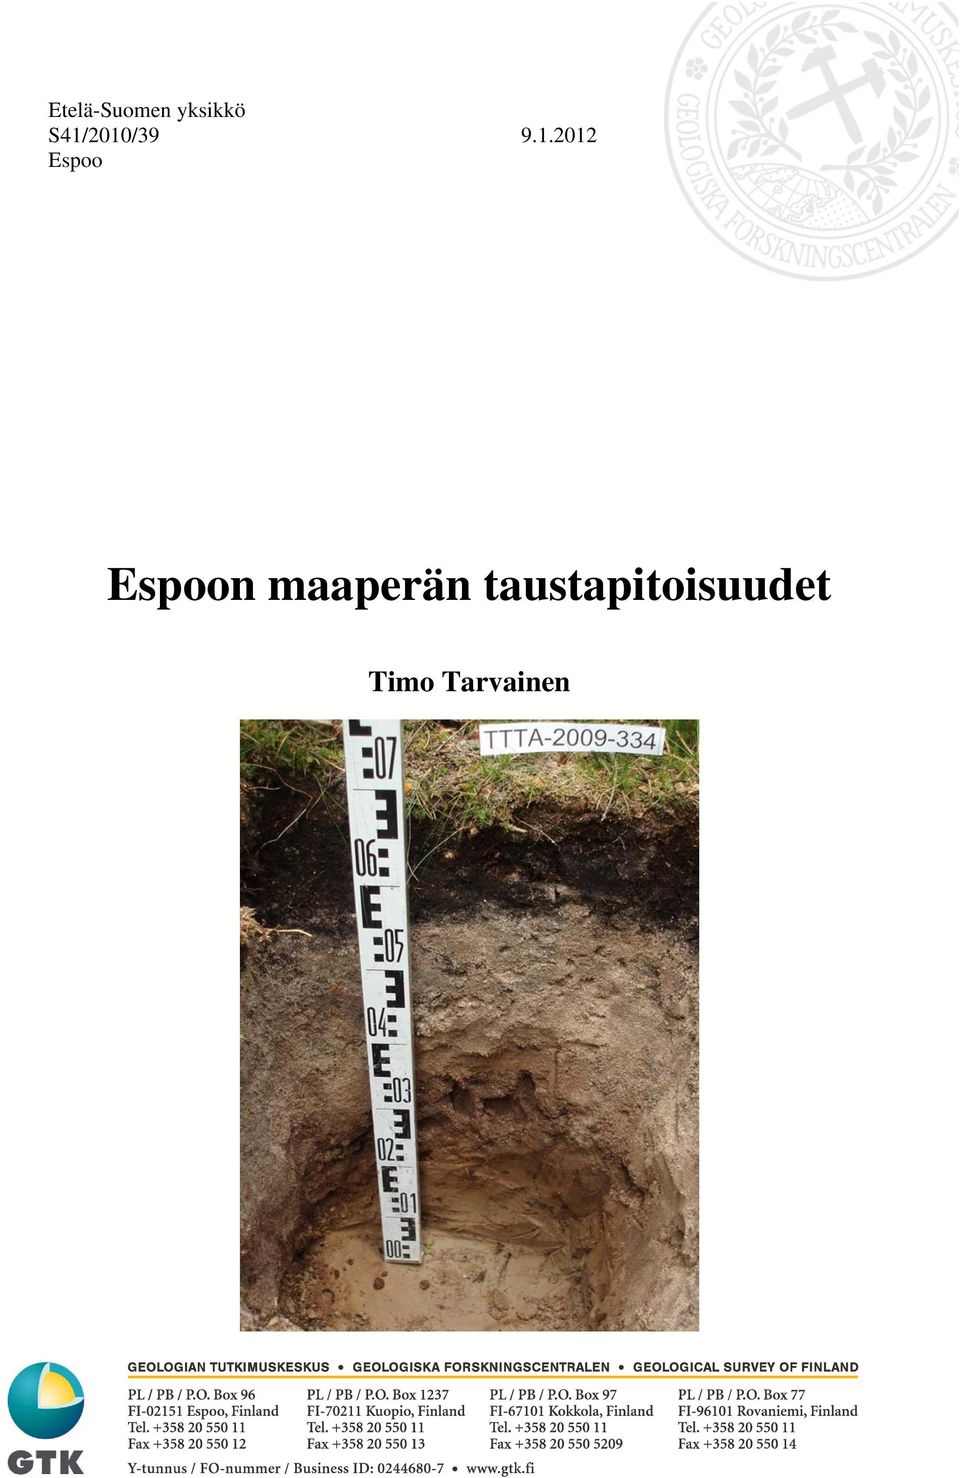 Espoo Espoon maaperän